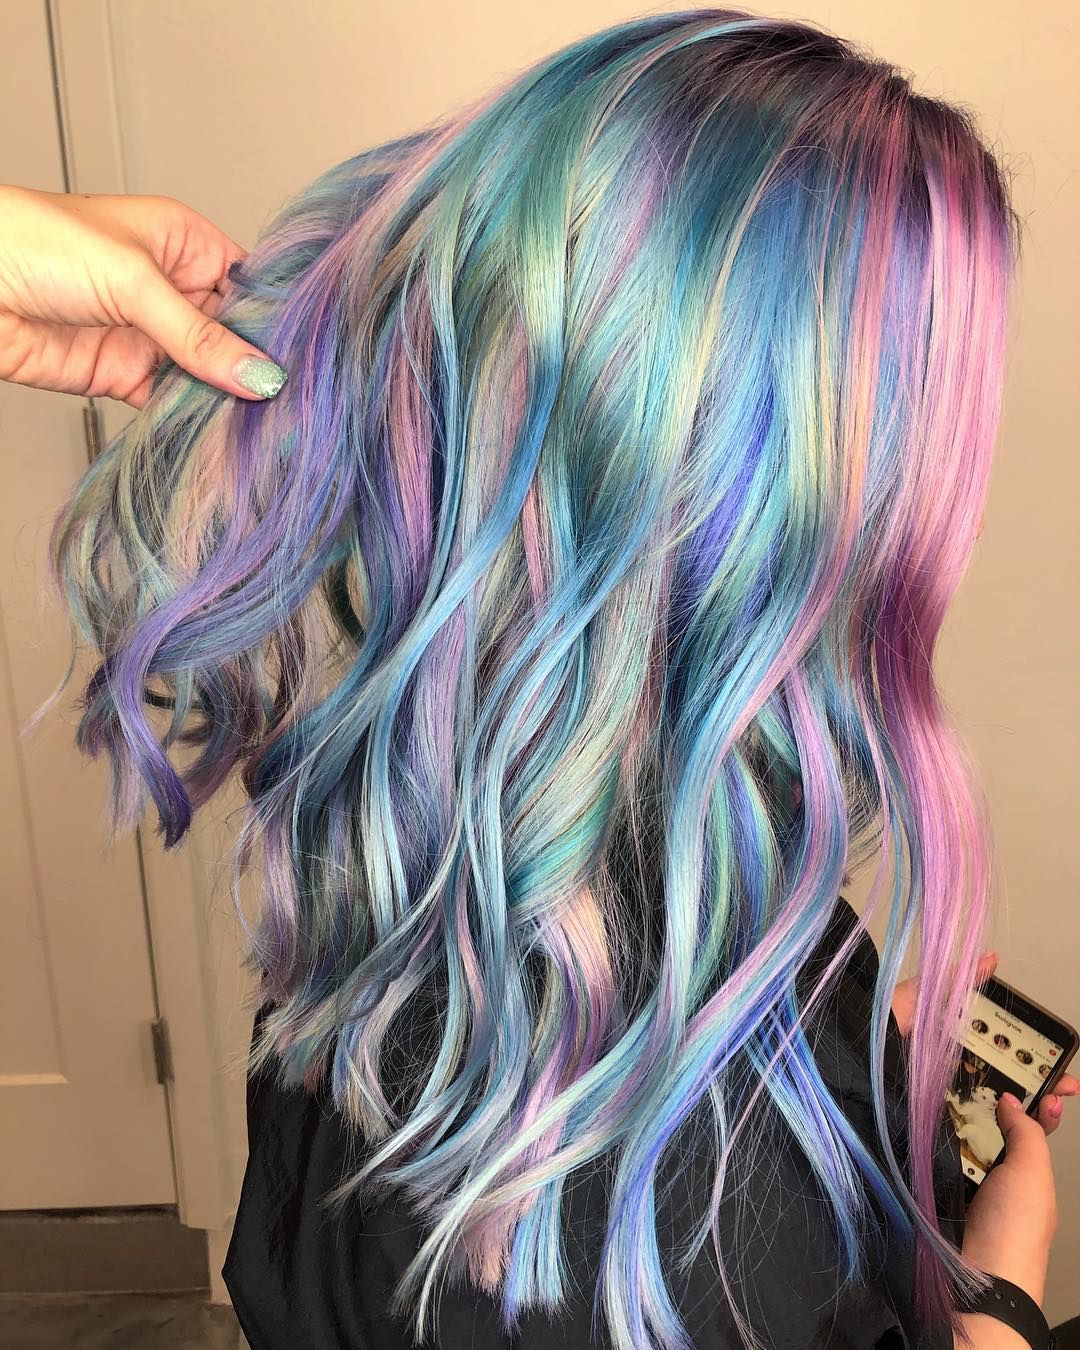 12 Mermaid Hair Color Ideas Amazing Mermaid Hairstyles For 2020